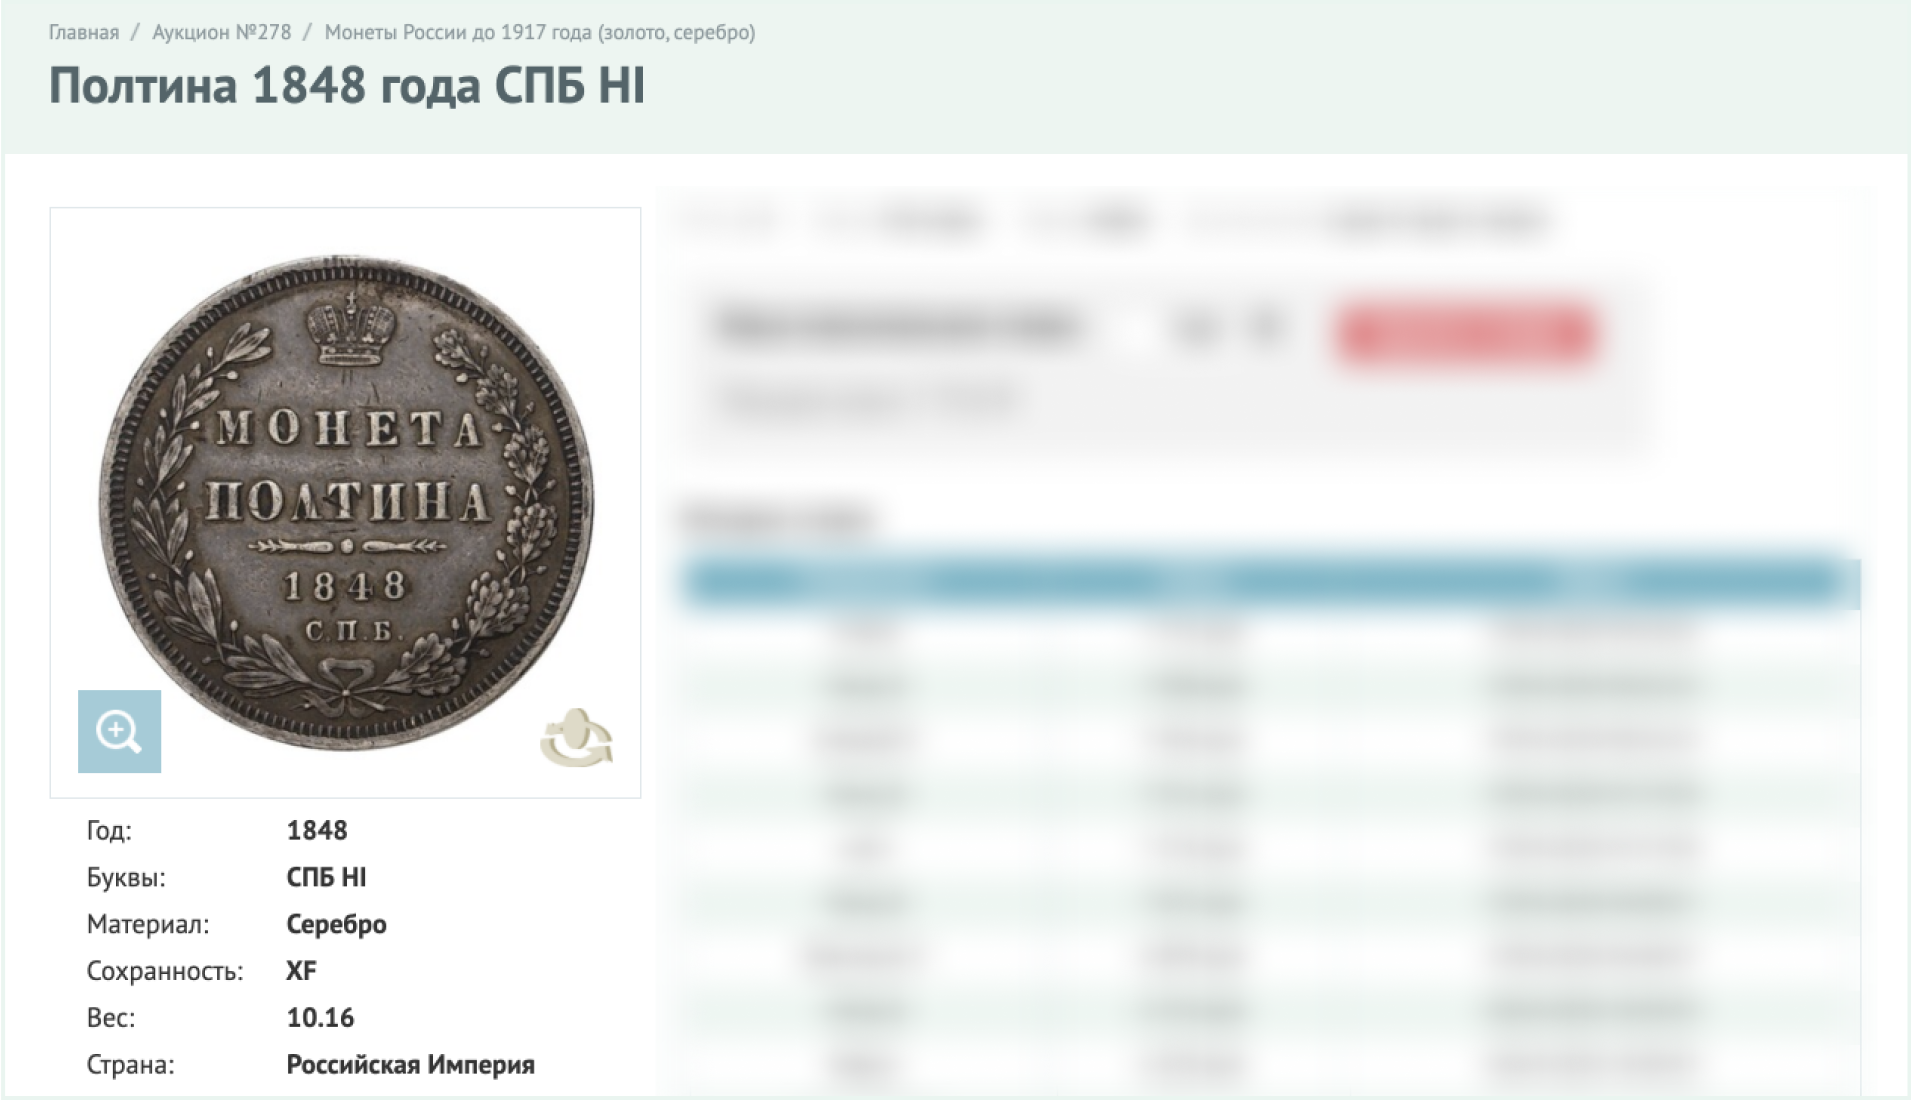 Блокада монет. Интернет магазин монет на Семеновской. Качество монет. Золотник аукцион. Как выставить монеты на аукцион через интернет.